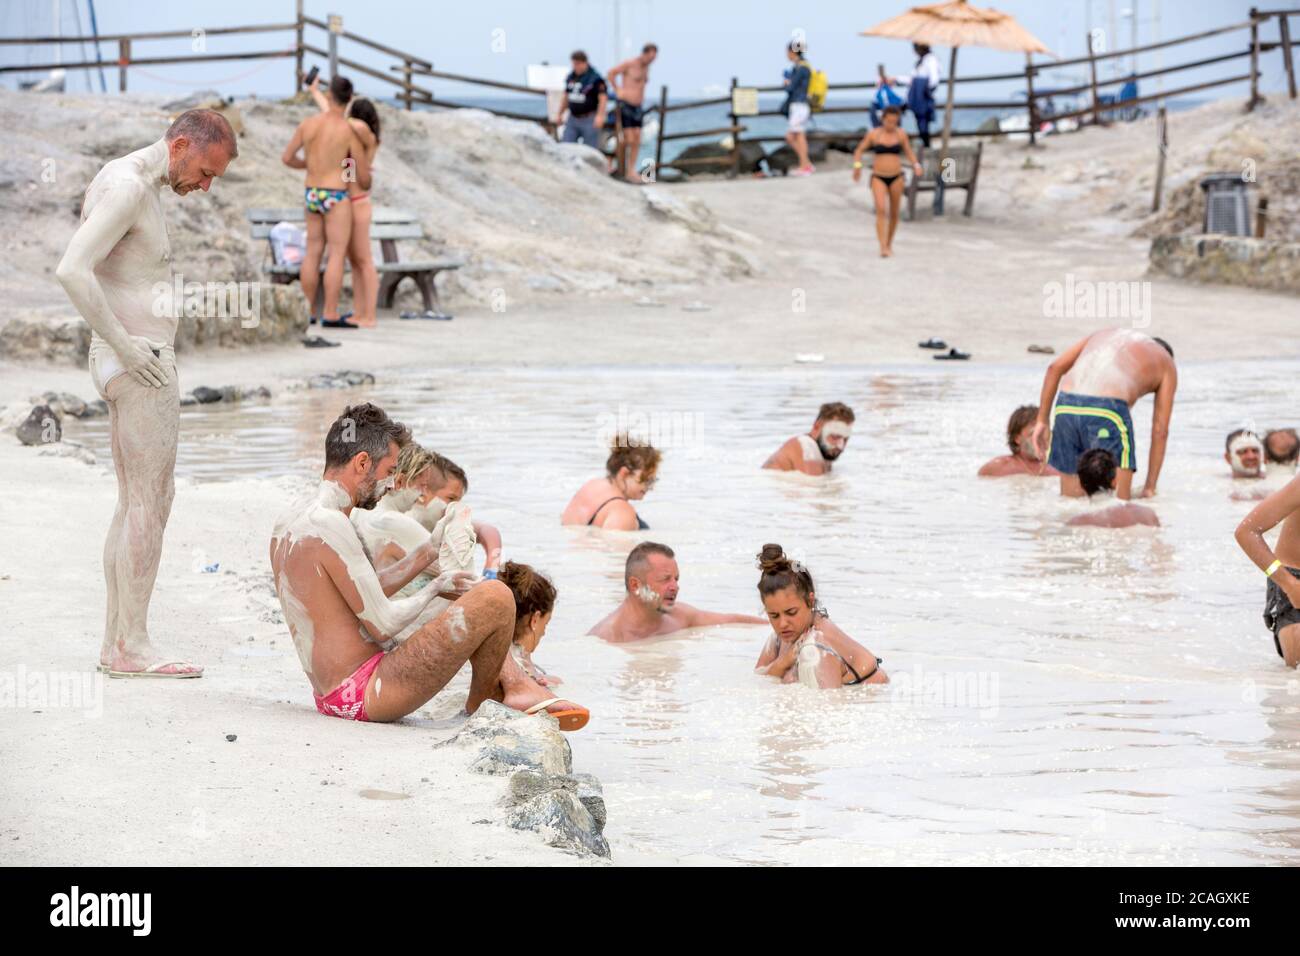 20.08.2018, Vulcano, Sizilien, Italien - Touristen und Einheimische nehmen ein Schwefelbad, Heilbad im Schwefelschlamm. Im Hintergrund das Meer. Vulcano b Stockfoto